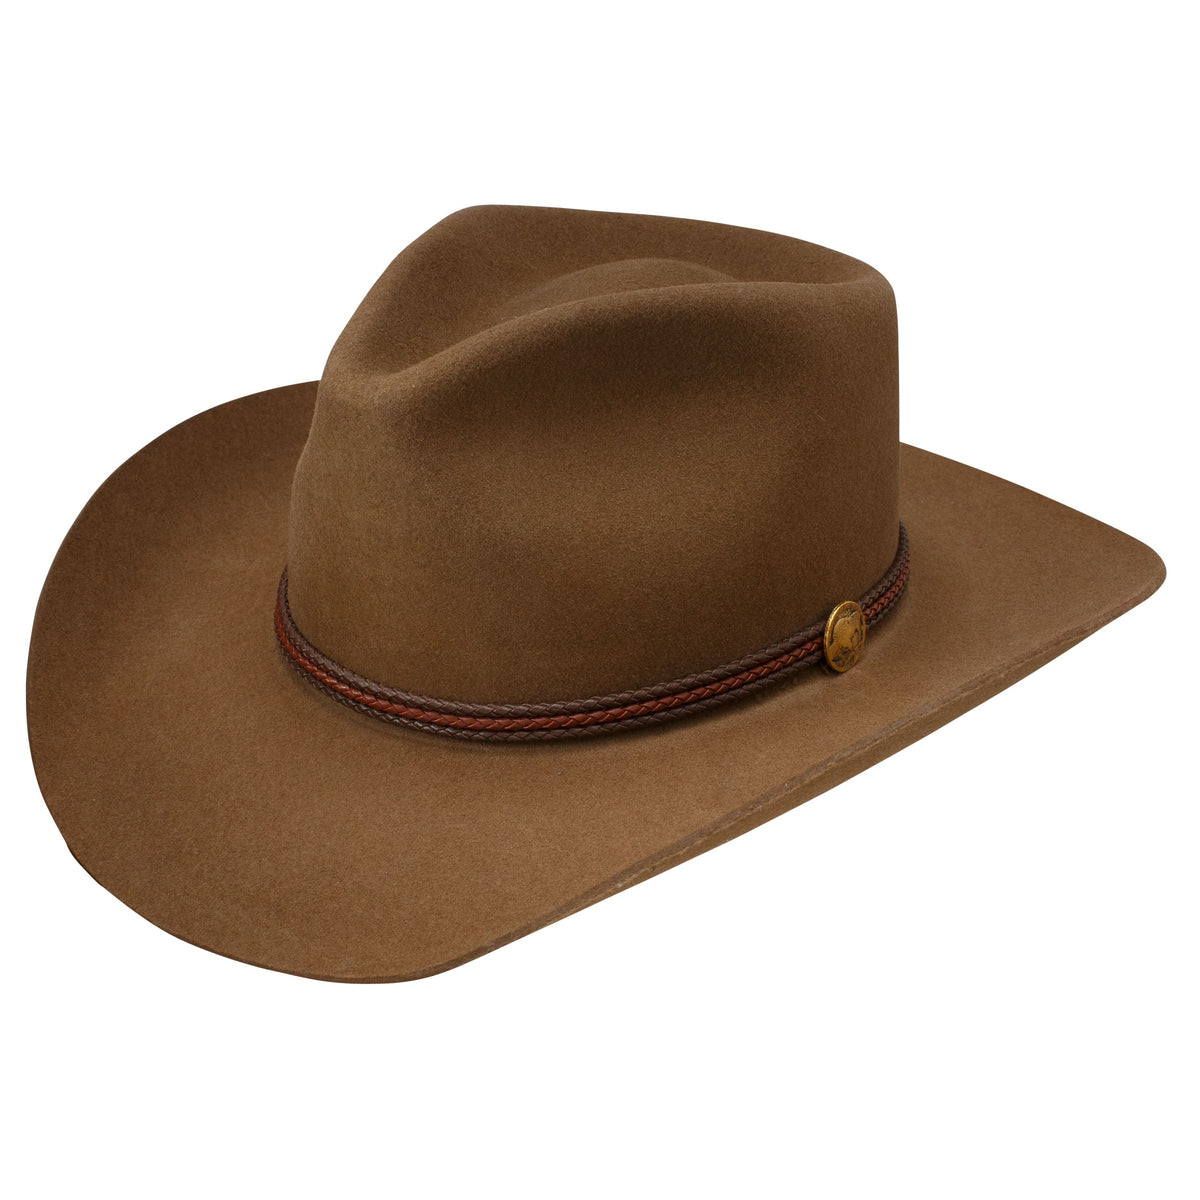 Stetson Woodrow Wool Felt Hat in Pecan